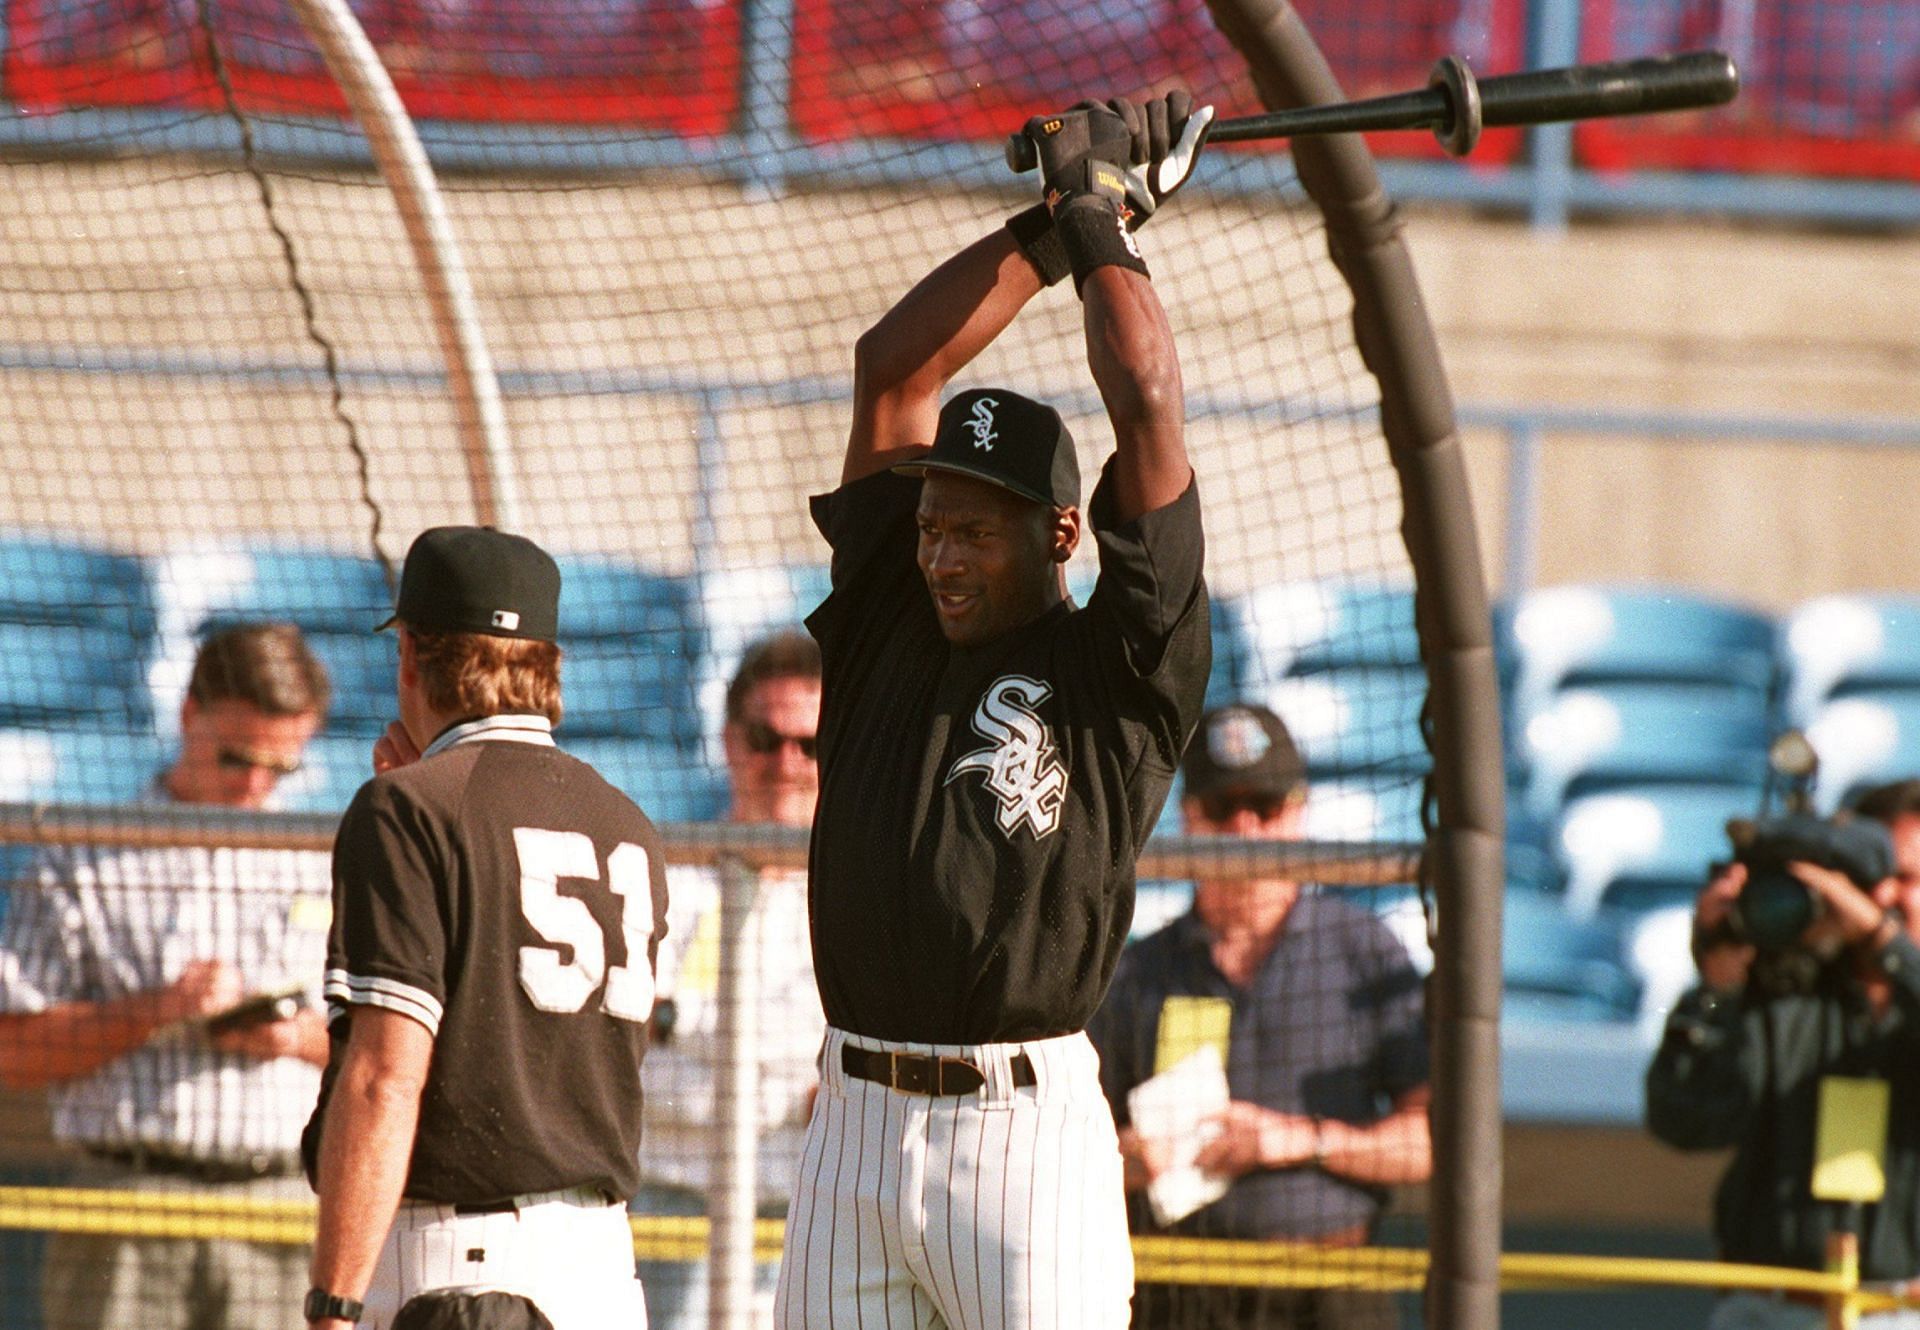 Michael Jordan had a short career in baseball.